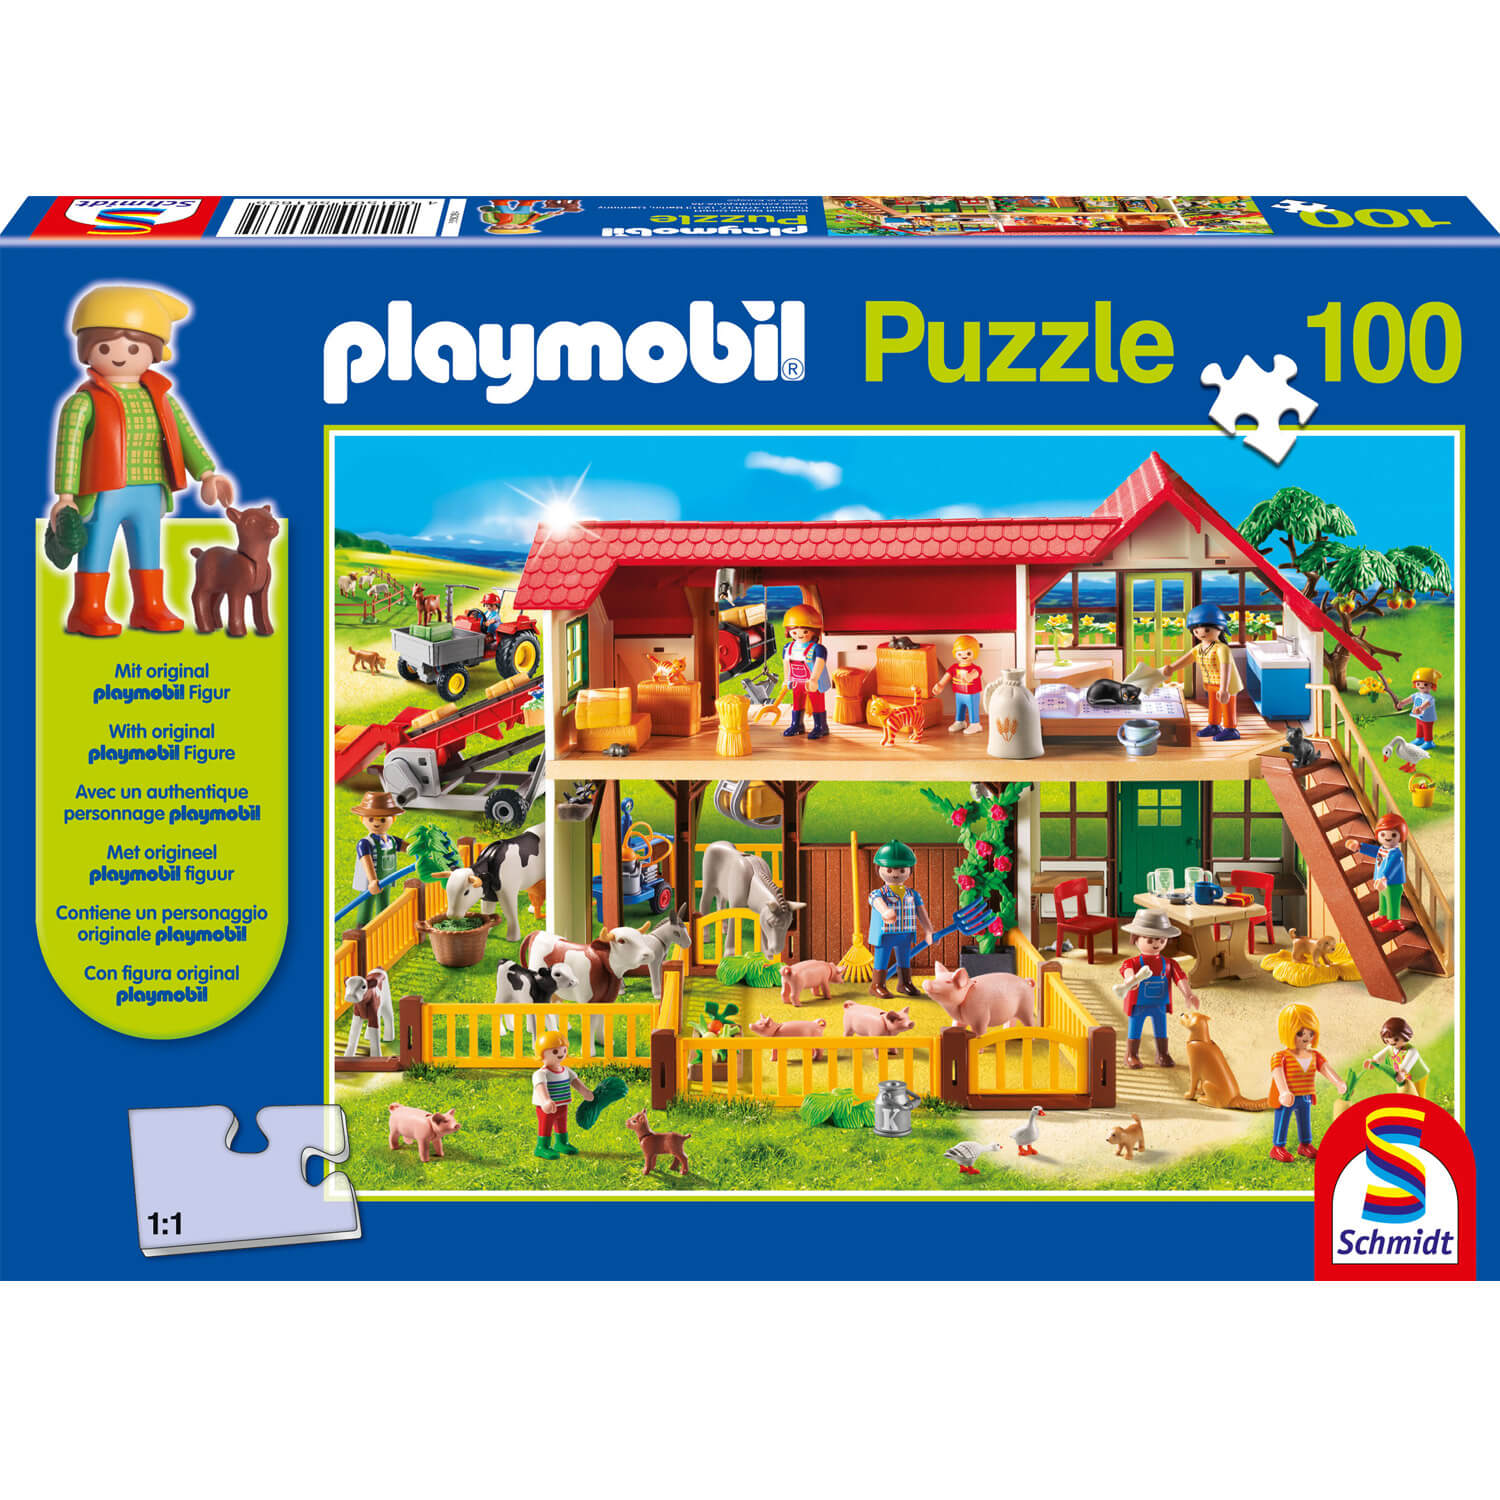 Puzzle 100 pièces : La Ferme : Playmobil - Schmidt - Rue des Puzzles